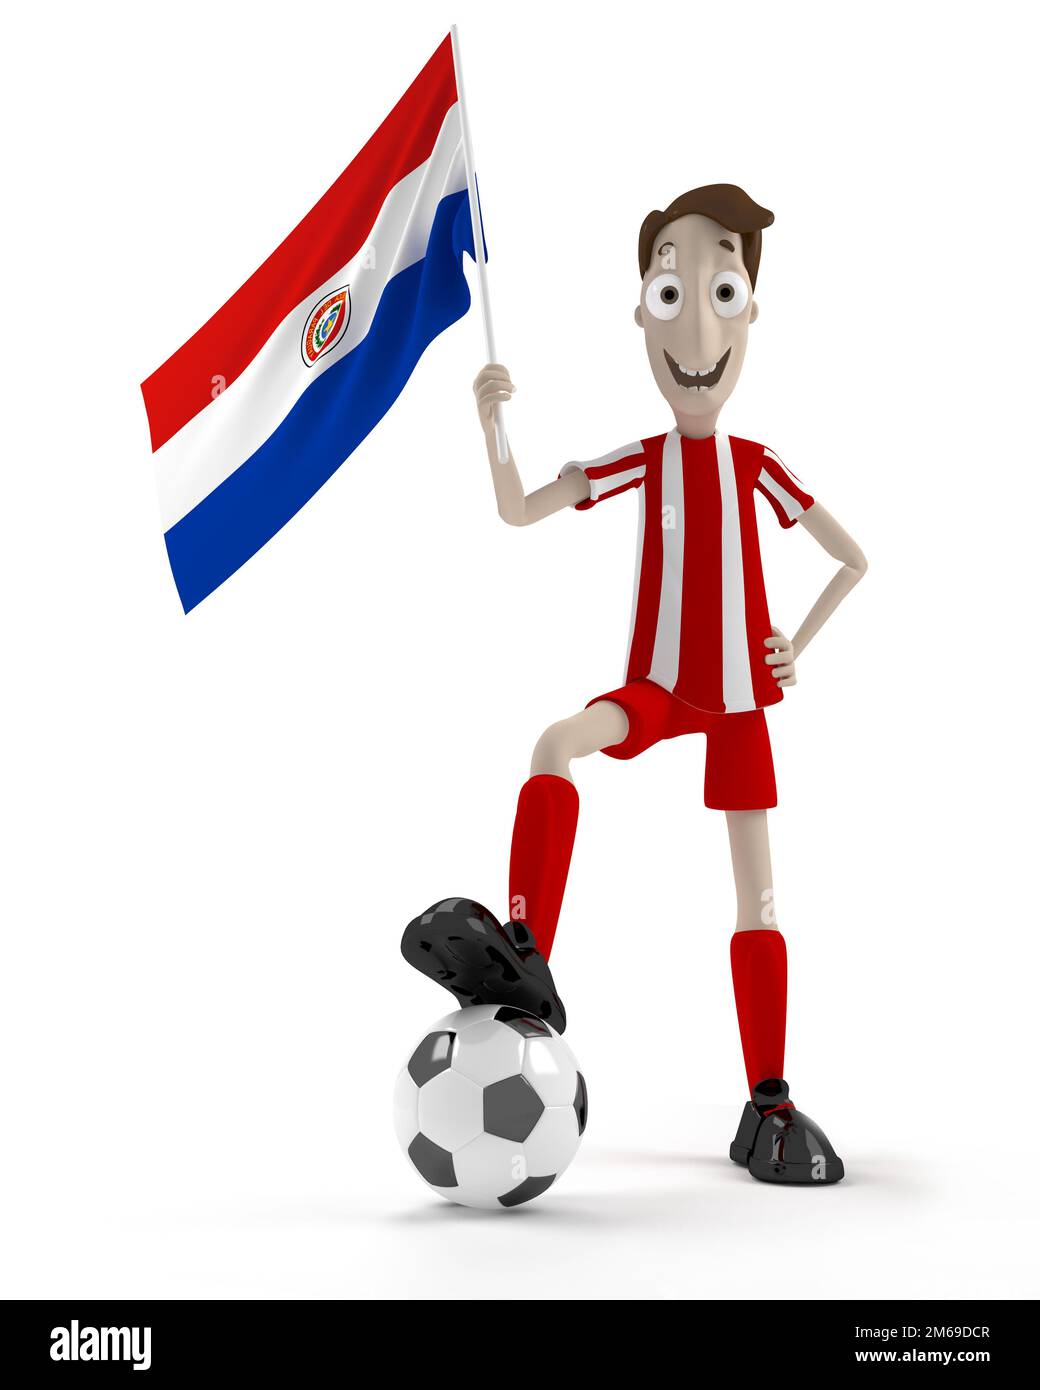 Paraguayan soccer player Stock Photo